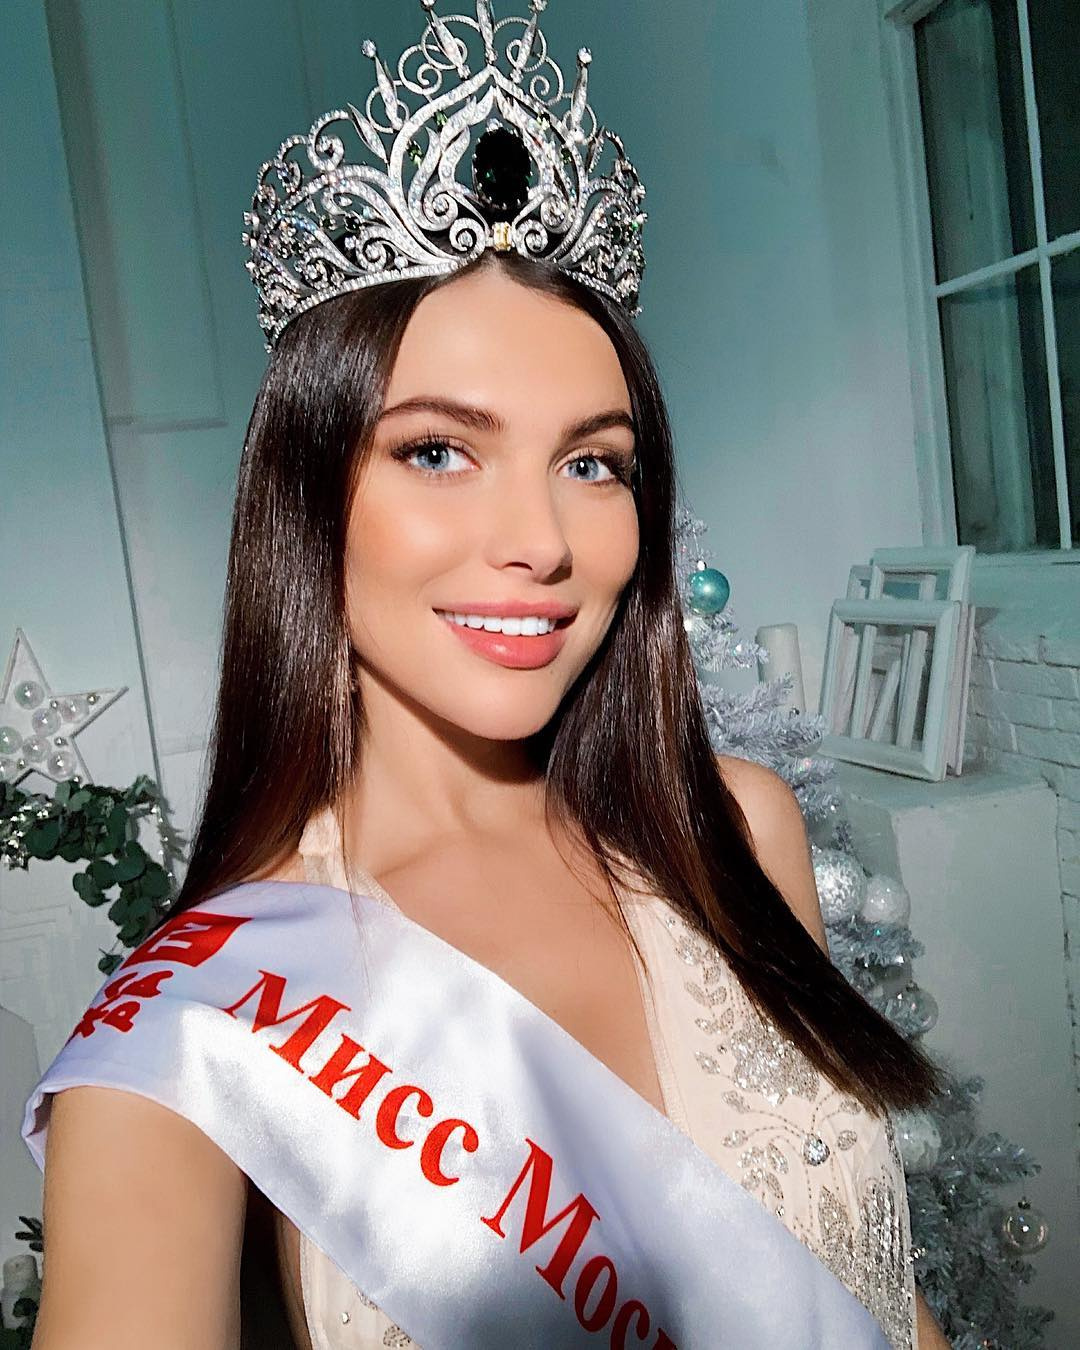 Корона на голове мисс Москвы — 2018 продержалась недолго